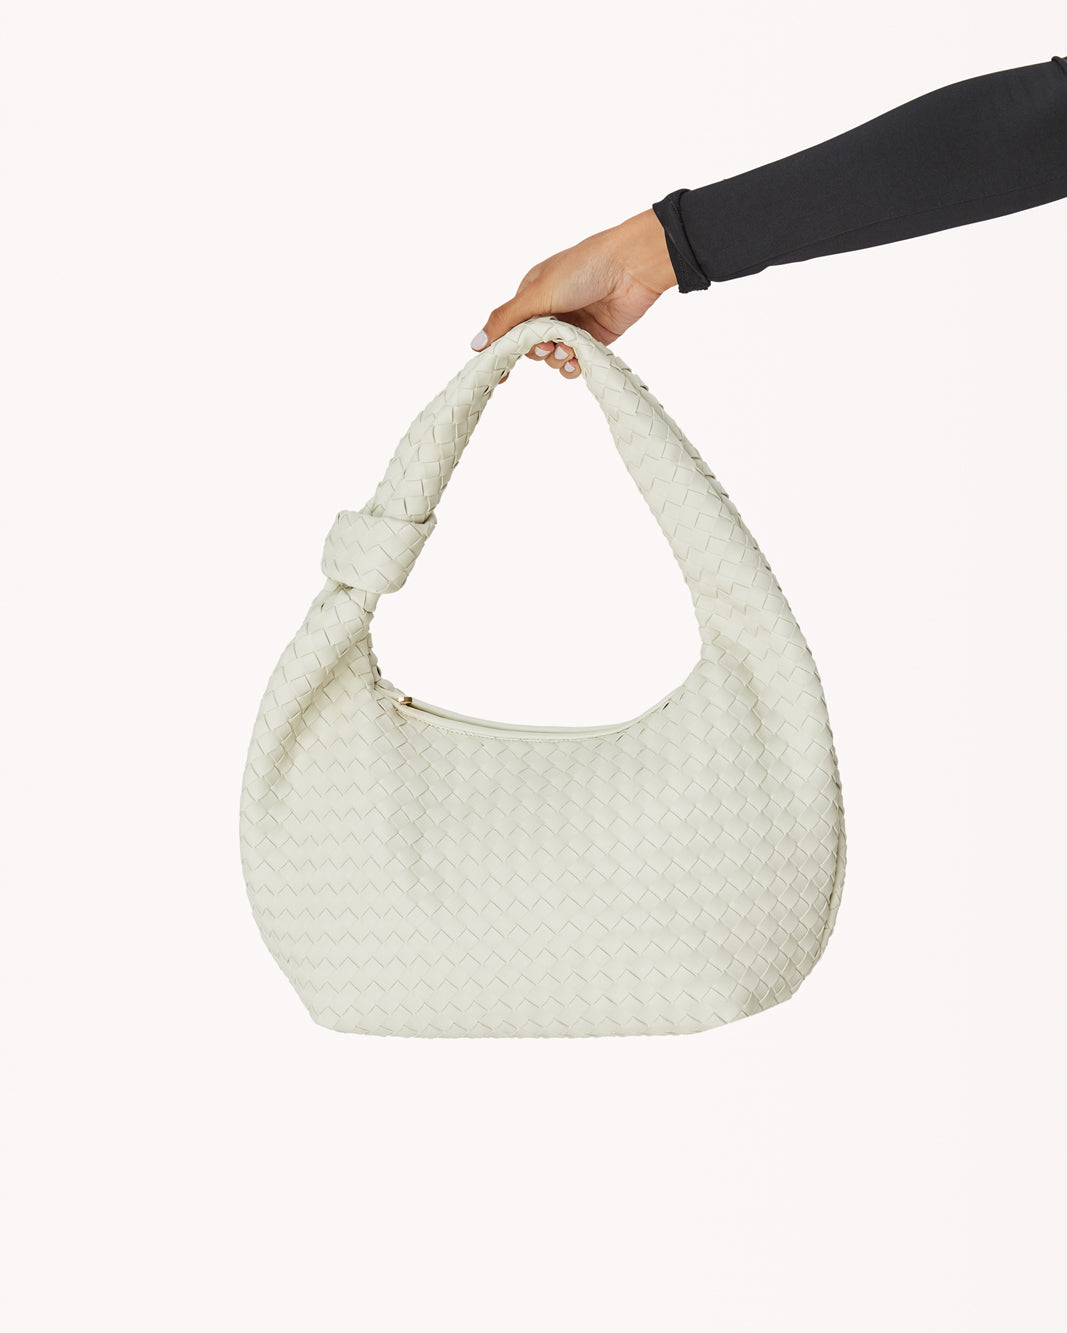 KENYA SHOULDER BAG - BONE-Handbags-Billini--Billini